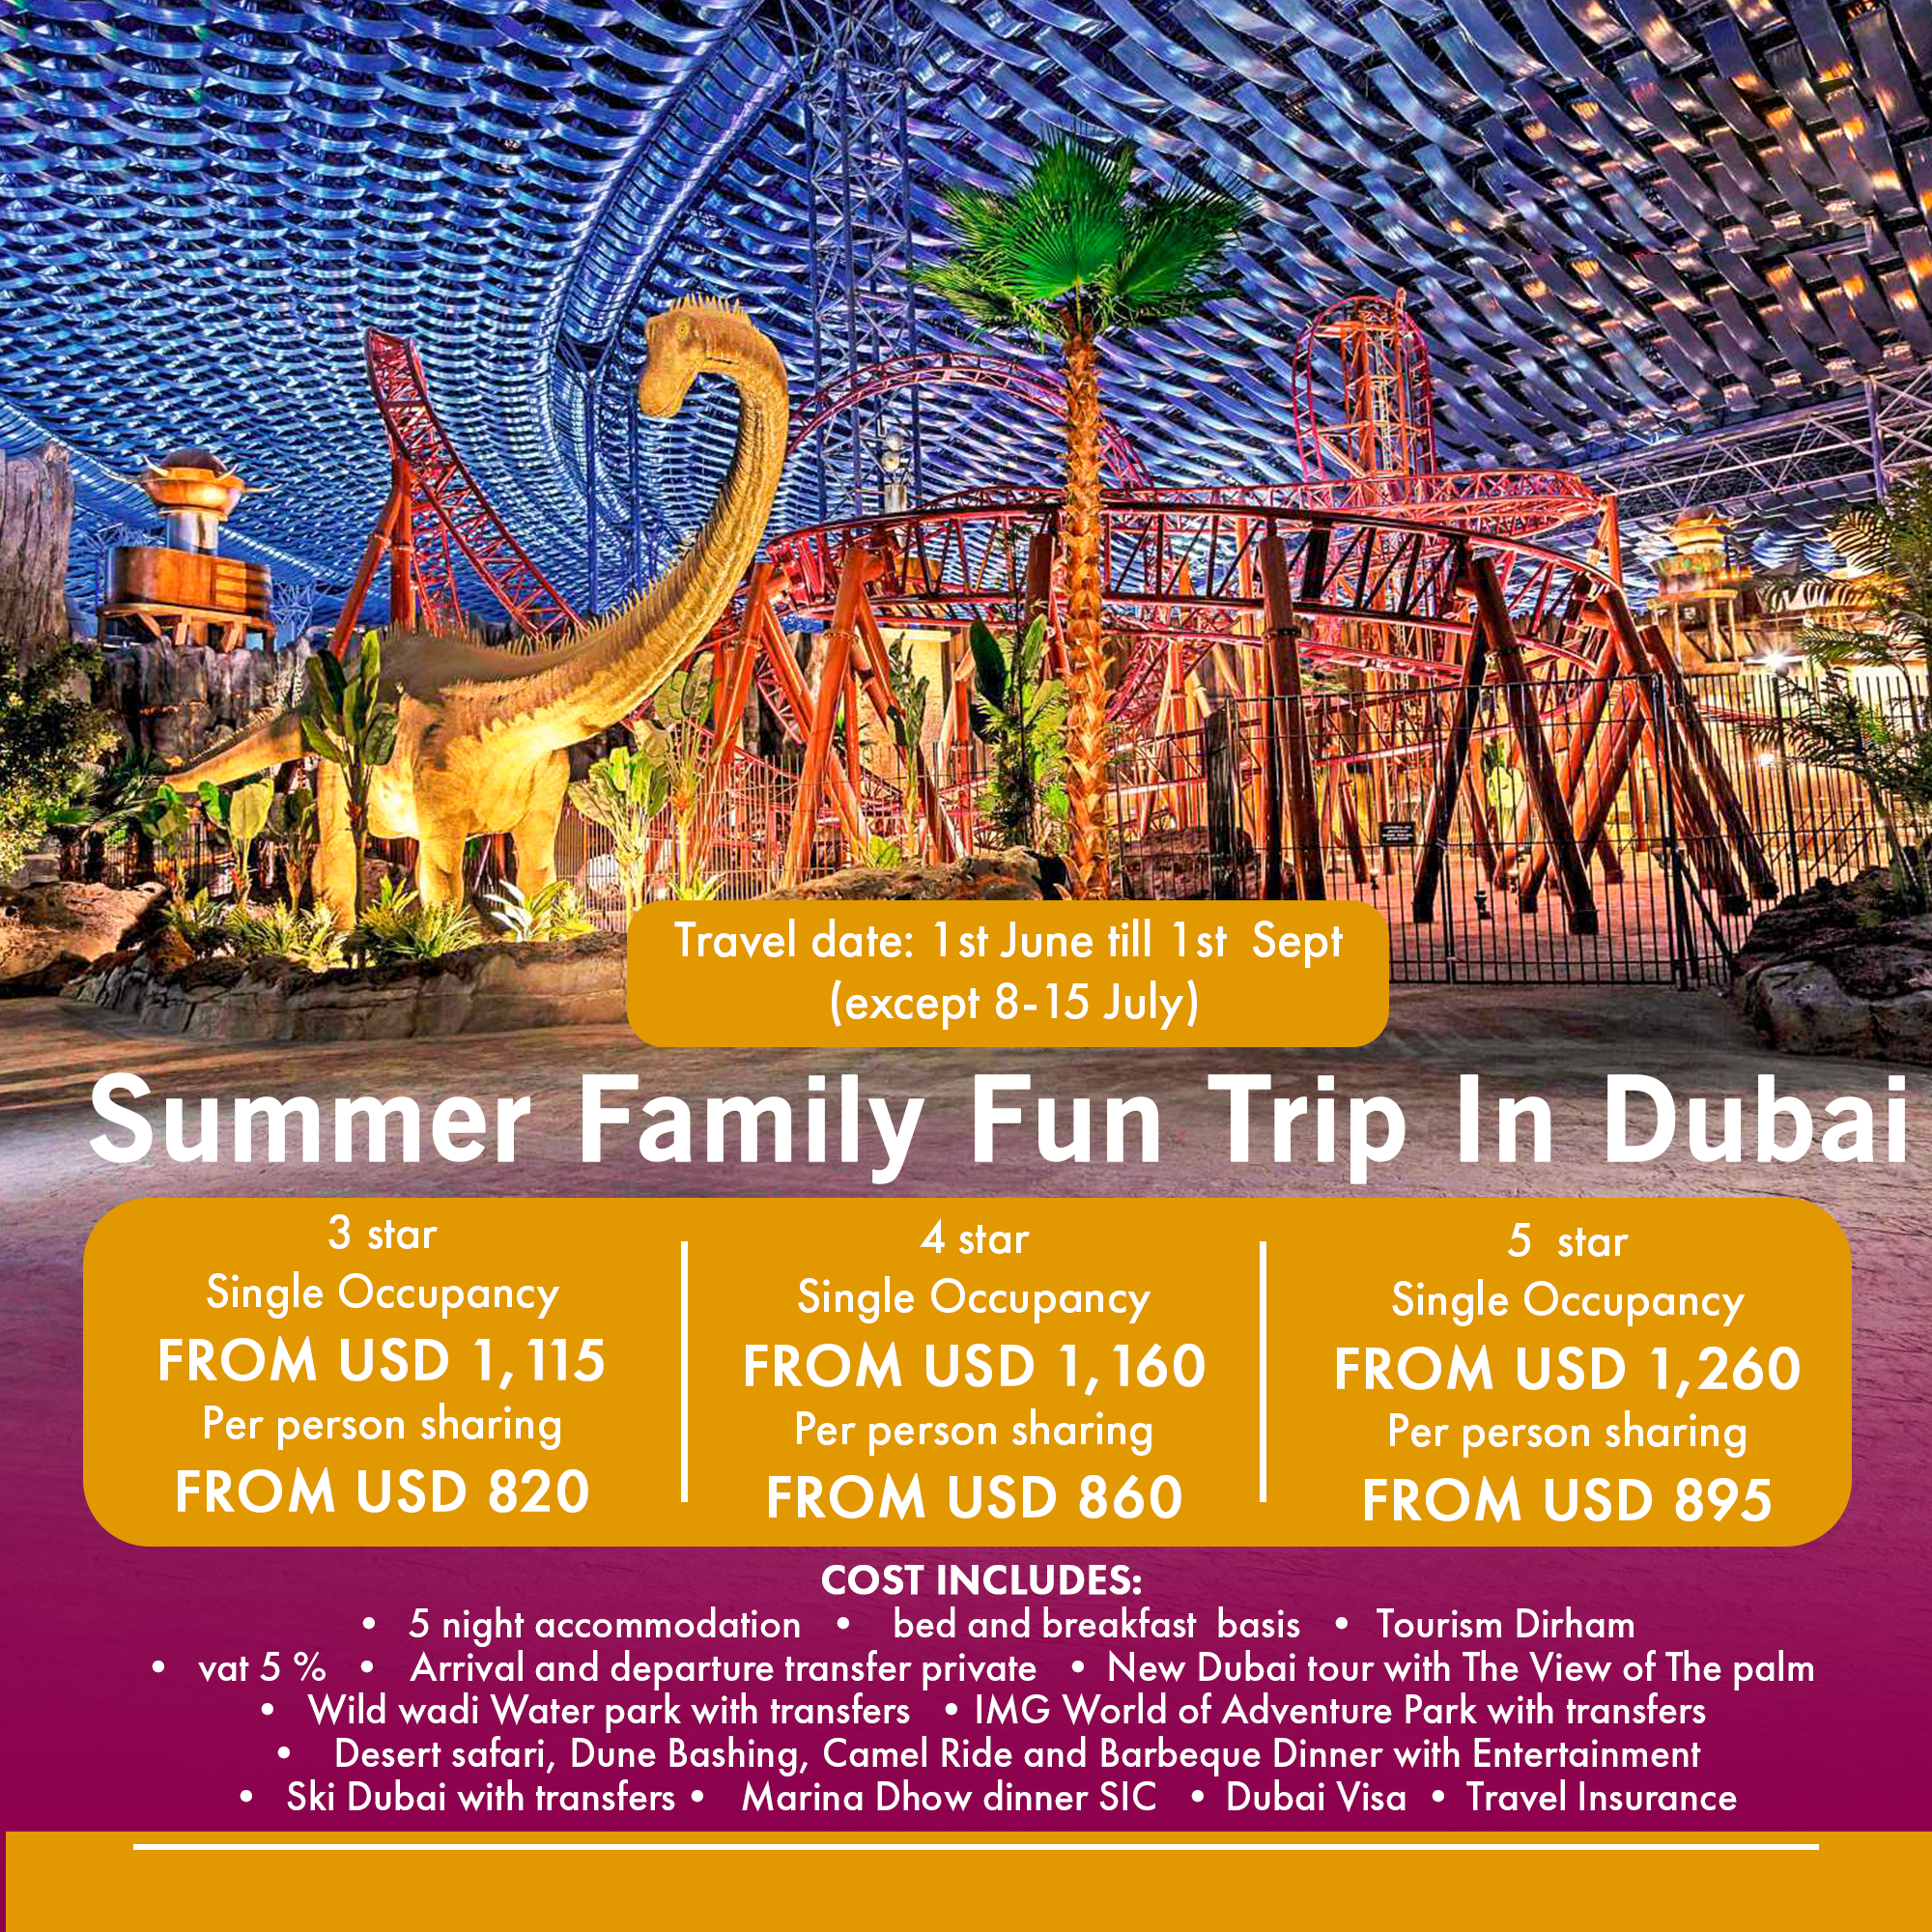 Summer Family Fun Trip In Dubai